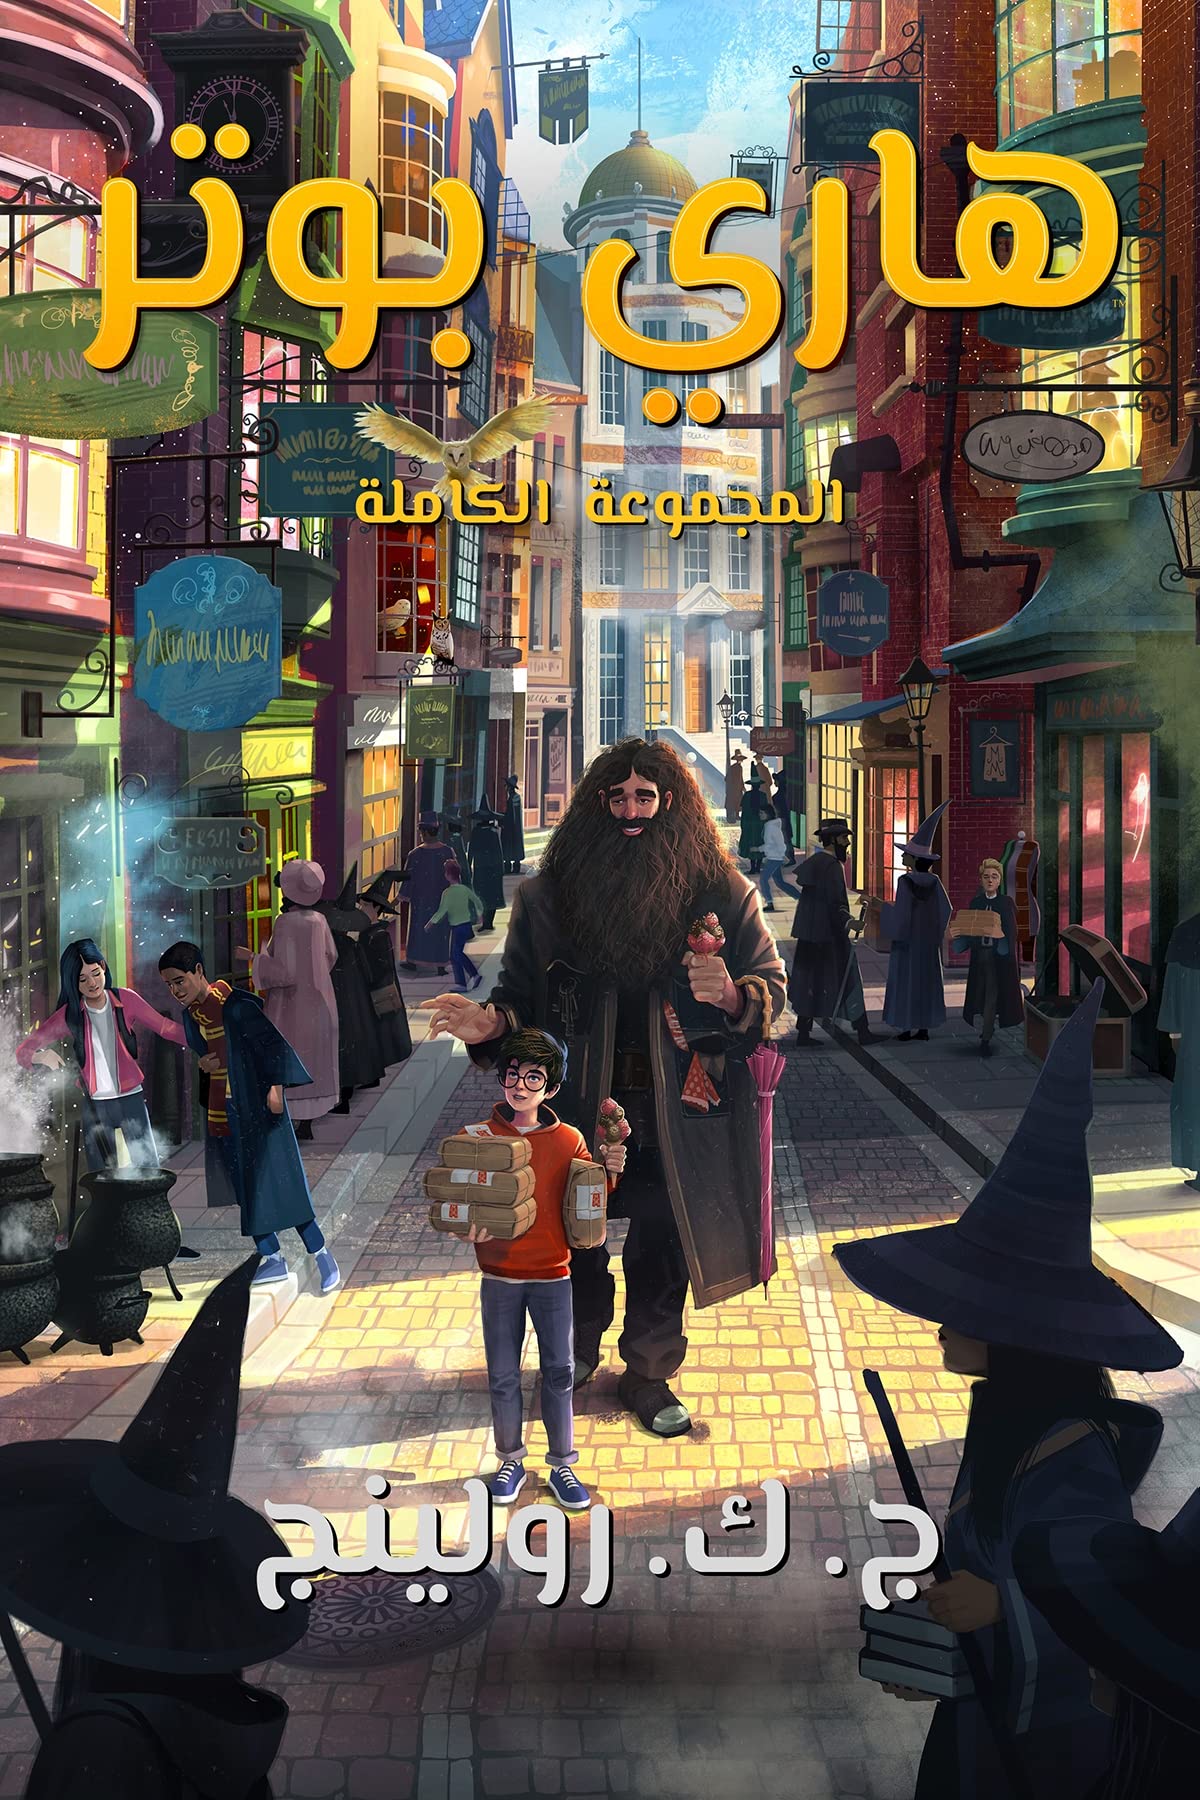 ‫المجموعة الكاملة لهاري بوتر: Harry Potter: The Complete Collection (1-7) ((Harry Potter) هاري بوتر)‬ (Arabic Edition)